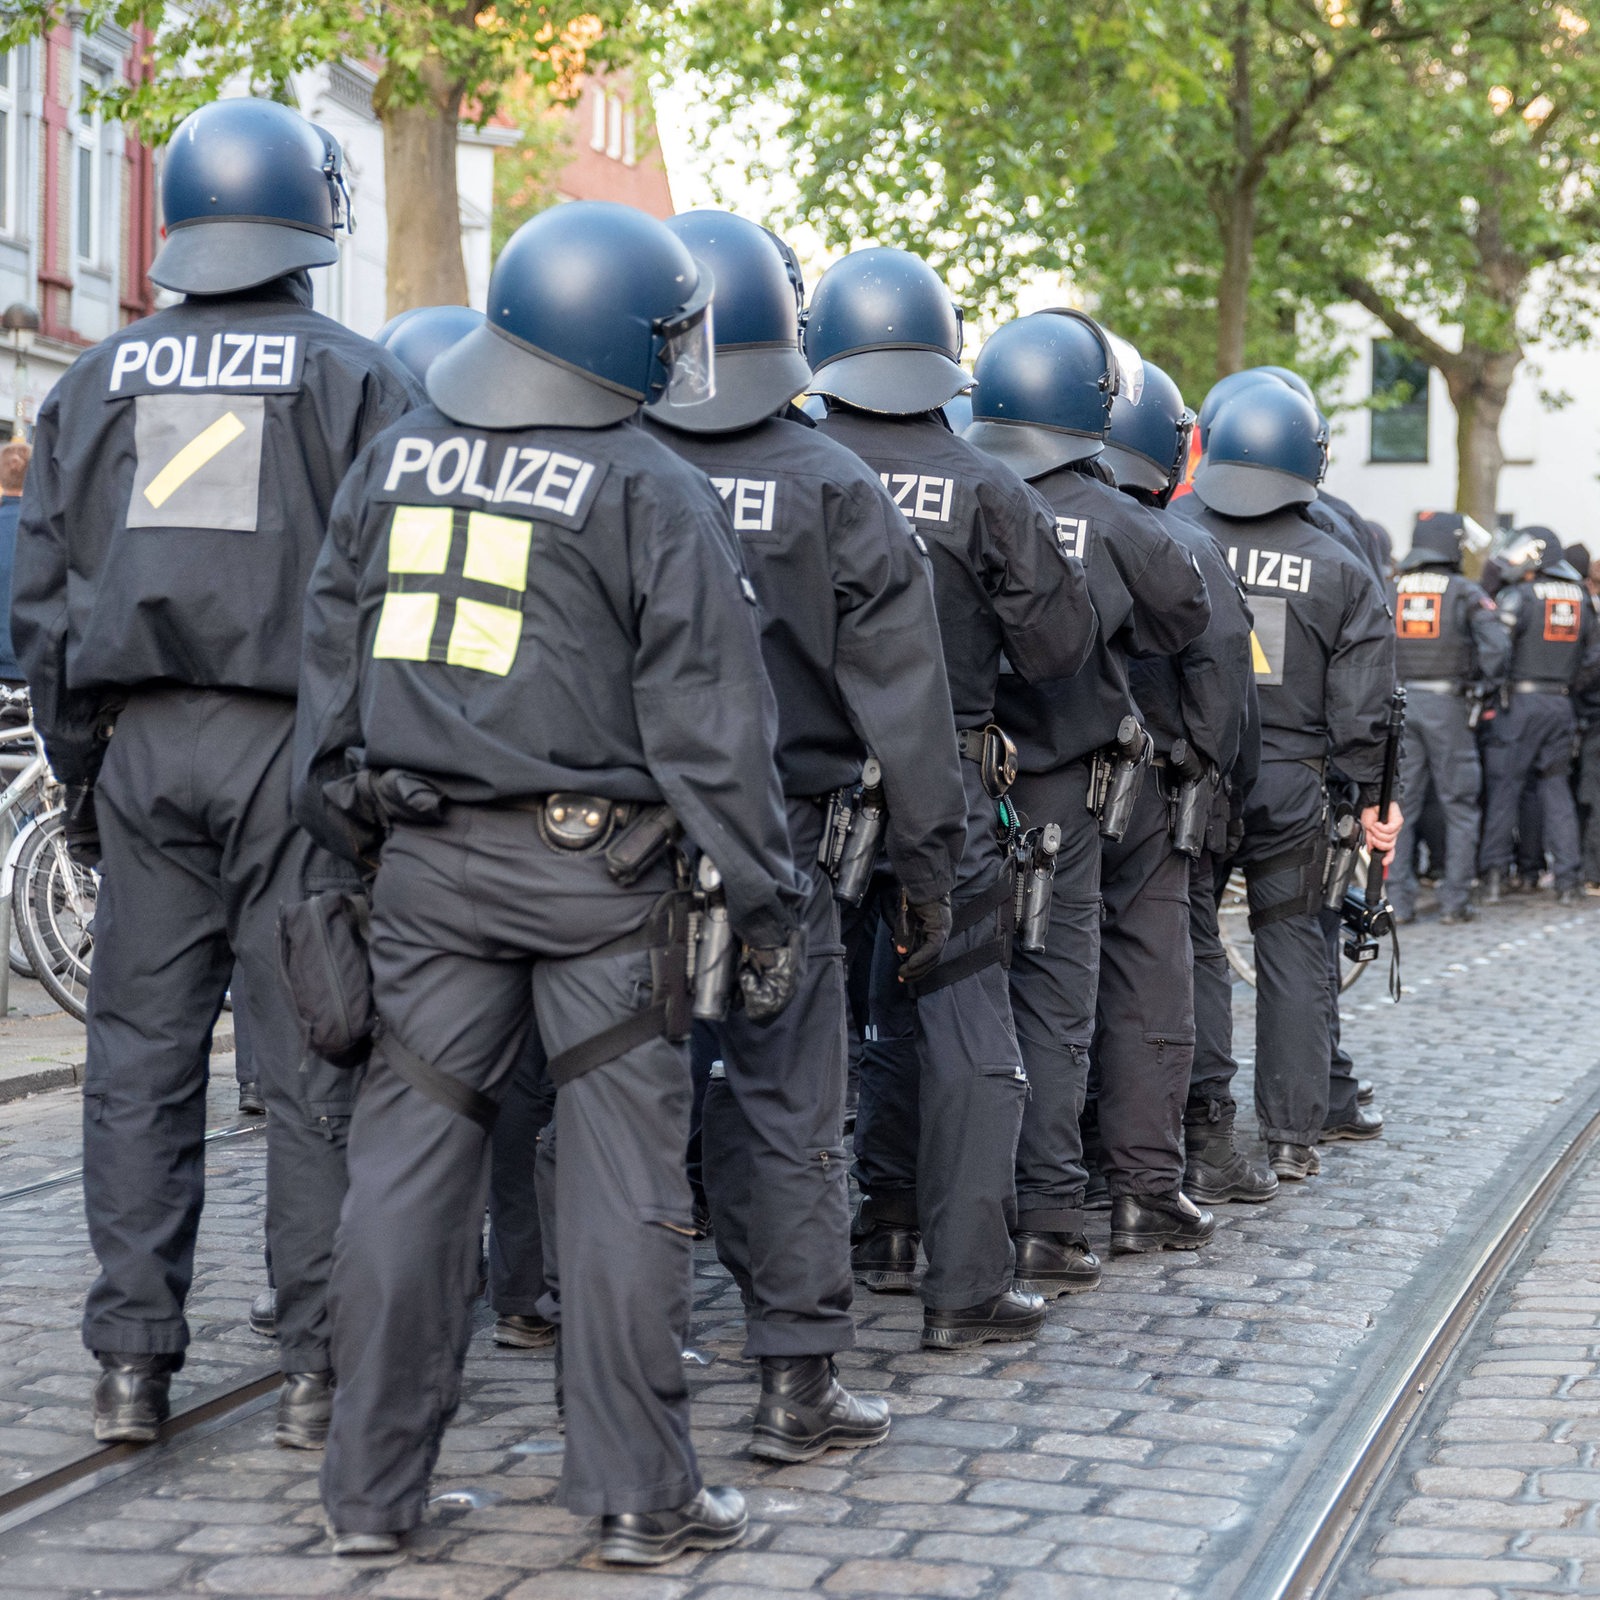 352.000 Polizei-Überstunden: Gewerkschaft sieht Politik in der Pflicht -  buten un binnen